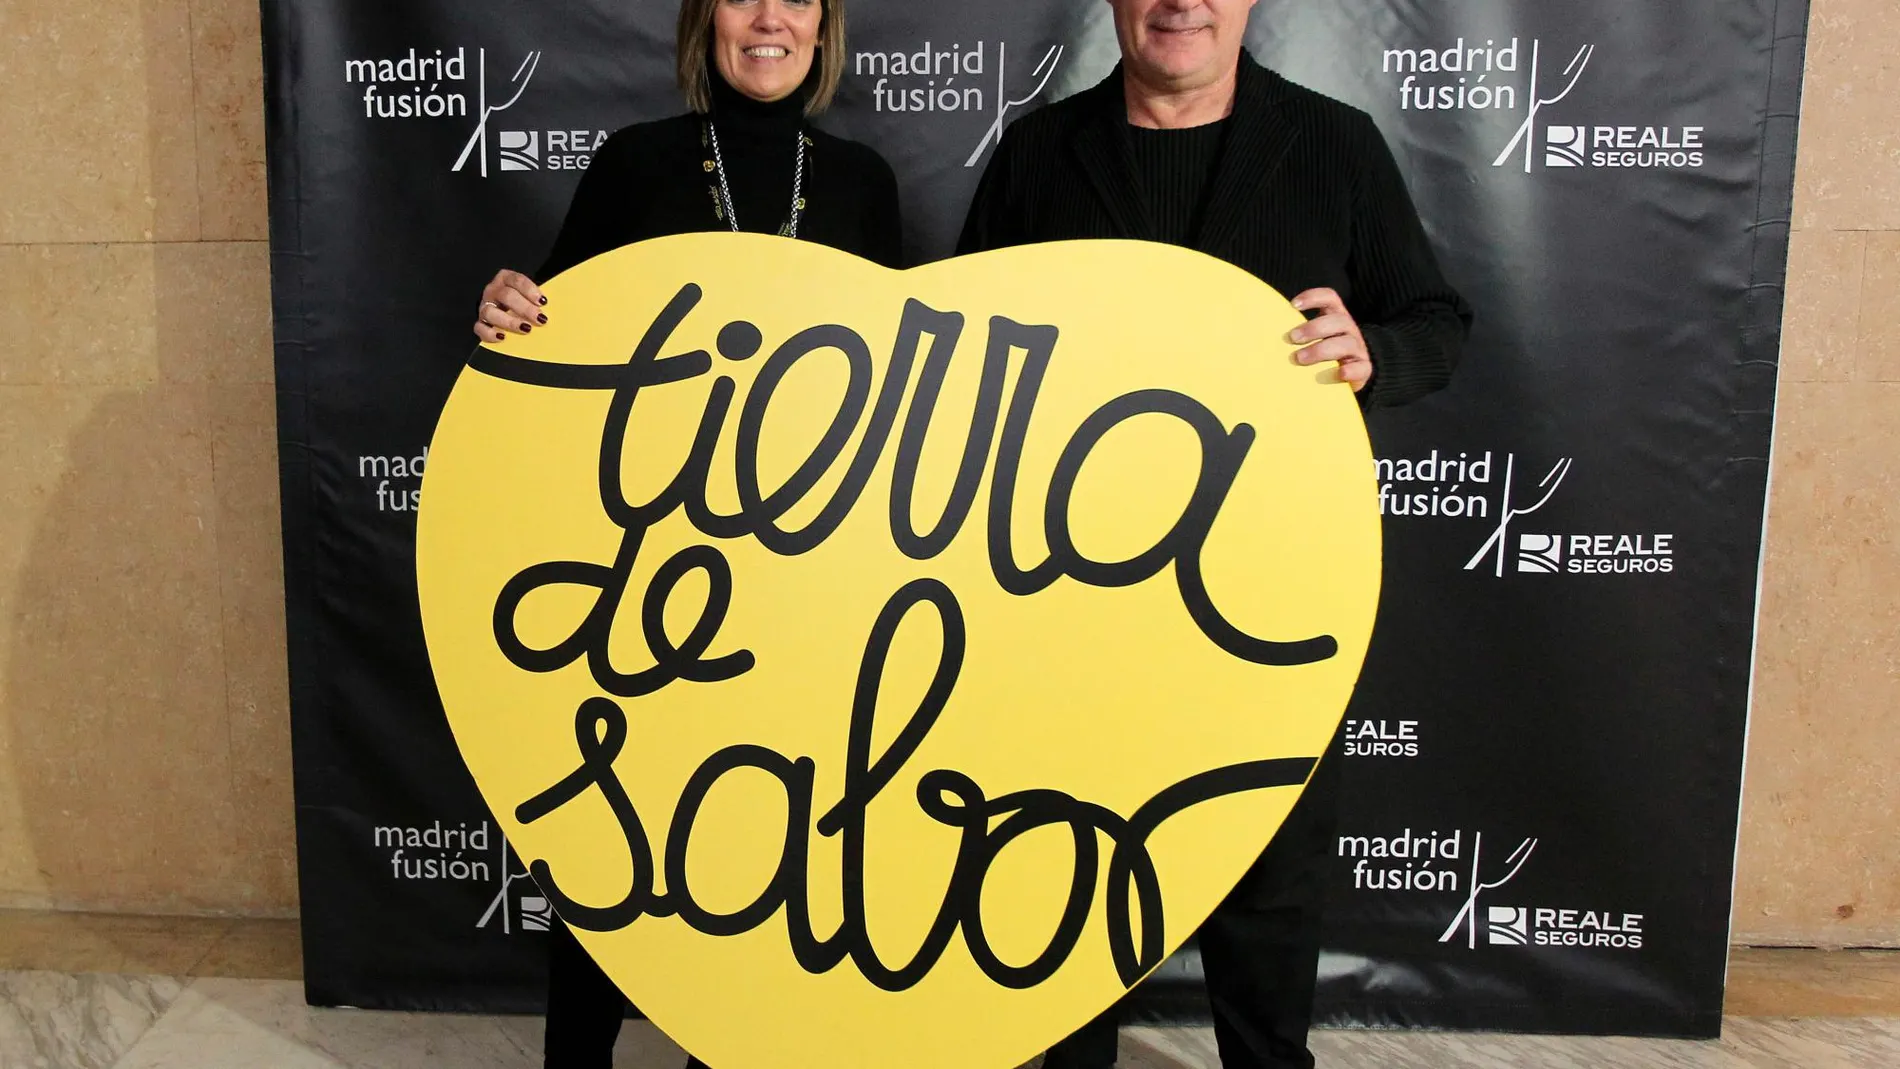 La consejera de Agricultura y Ganadería, Milagros Marcos, junto al prestigioso chef Ferran Adrià en Madrid Fusión